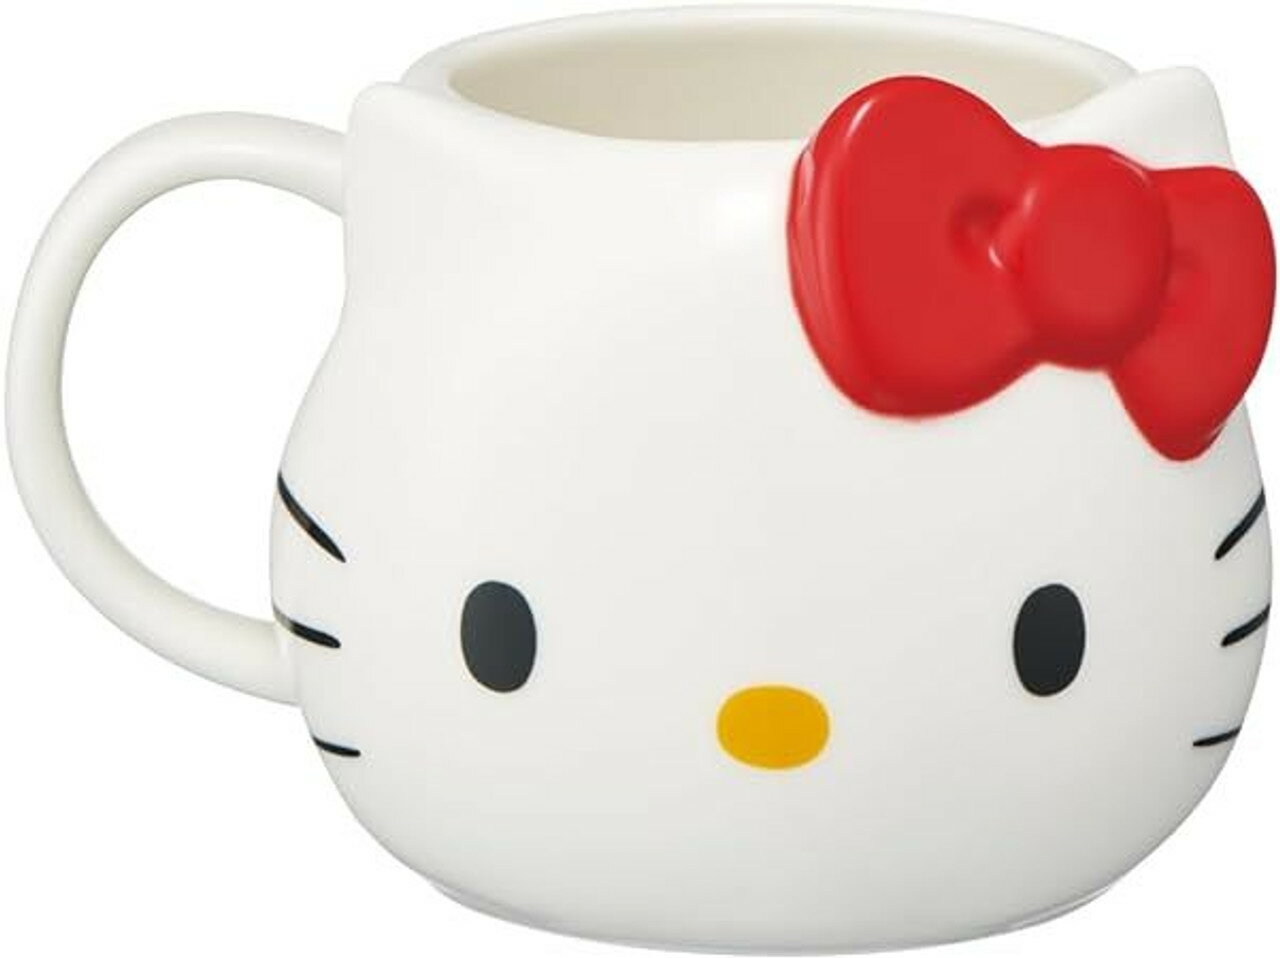 【震撼精品百貨】凱蒂貓_Hello Kitty~日本SANRIO三麗鷗 KITTY陶瓷造型馬克杯390ML-大臉*65581